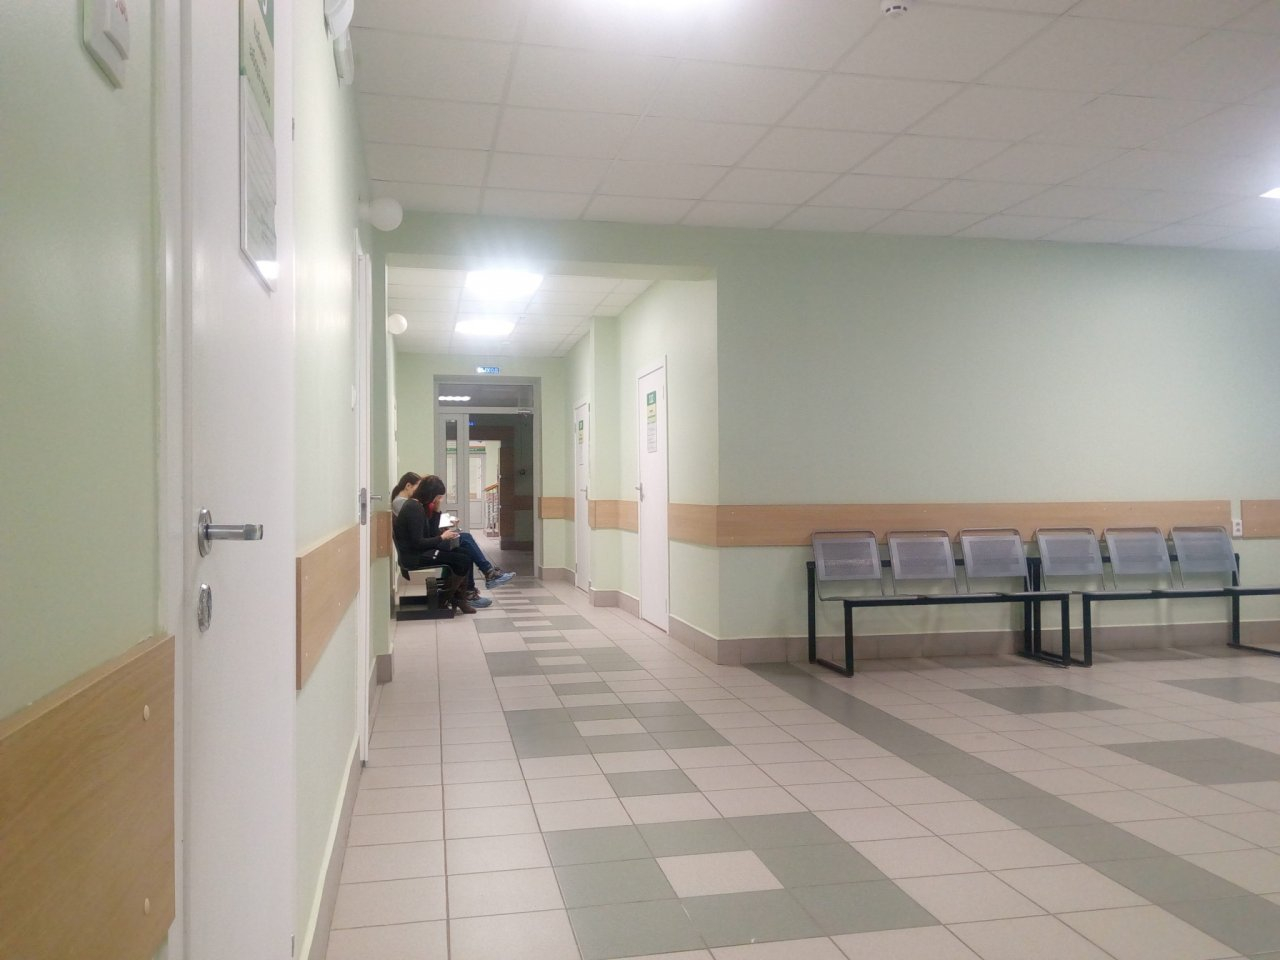 "Это угроза жизни больных": решение депздрава возмутило врача в Ярославле